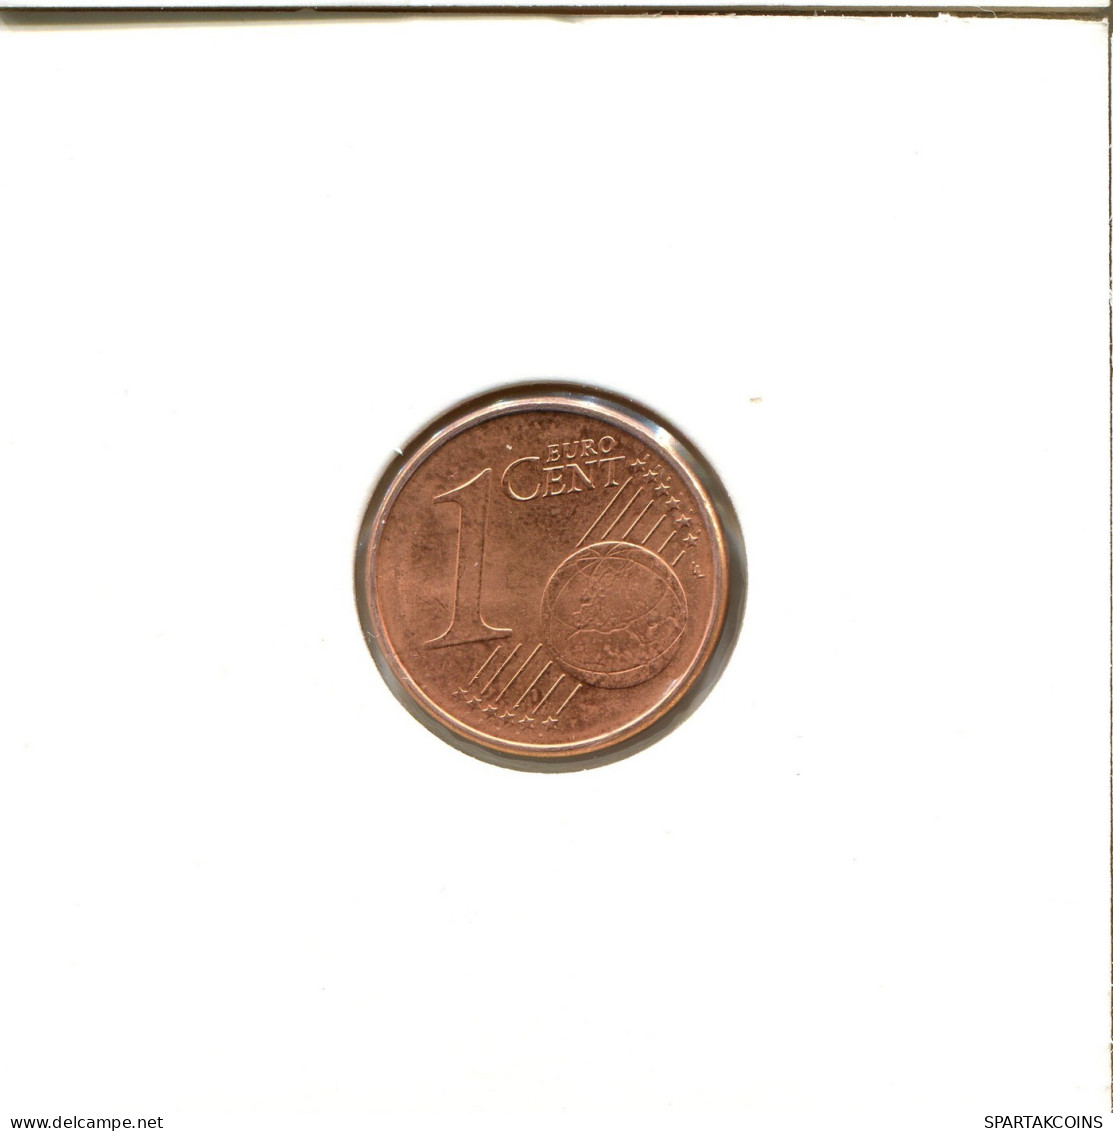 1 EURO CENT 2007 ALEMANIA Moneda GERMANY #EU131.E.A - Duitsland